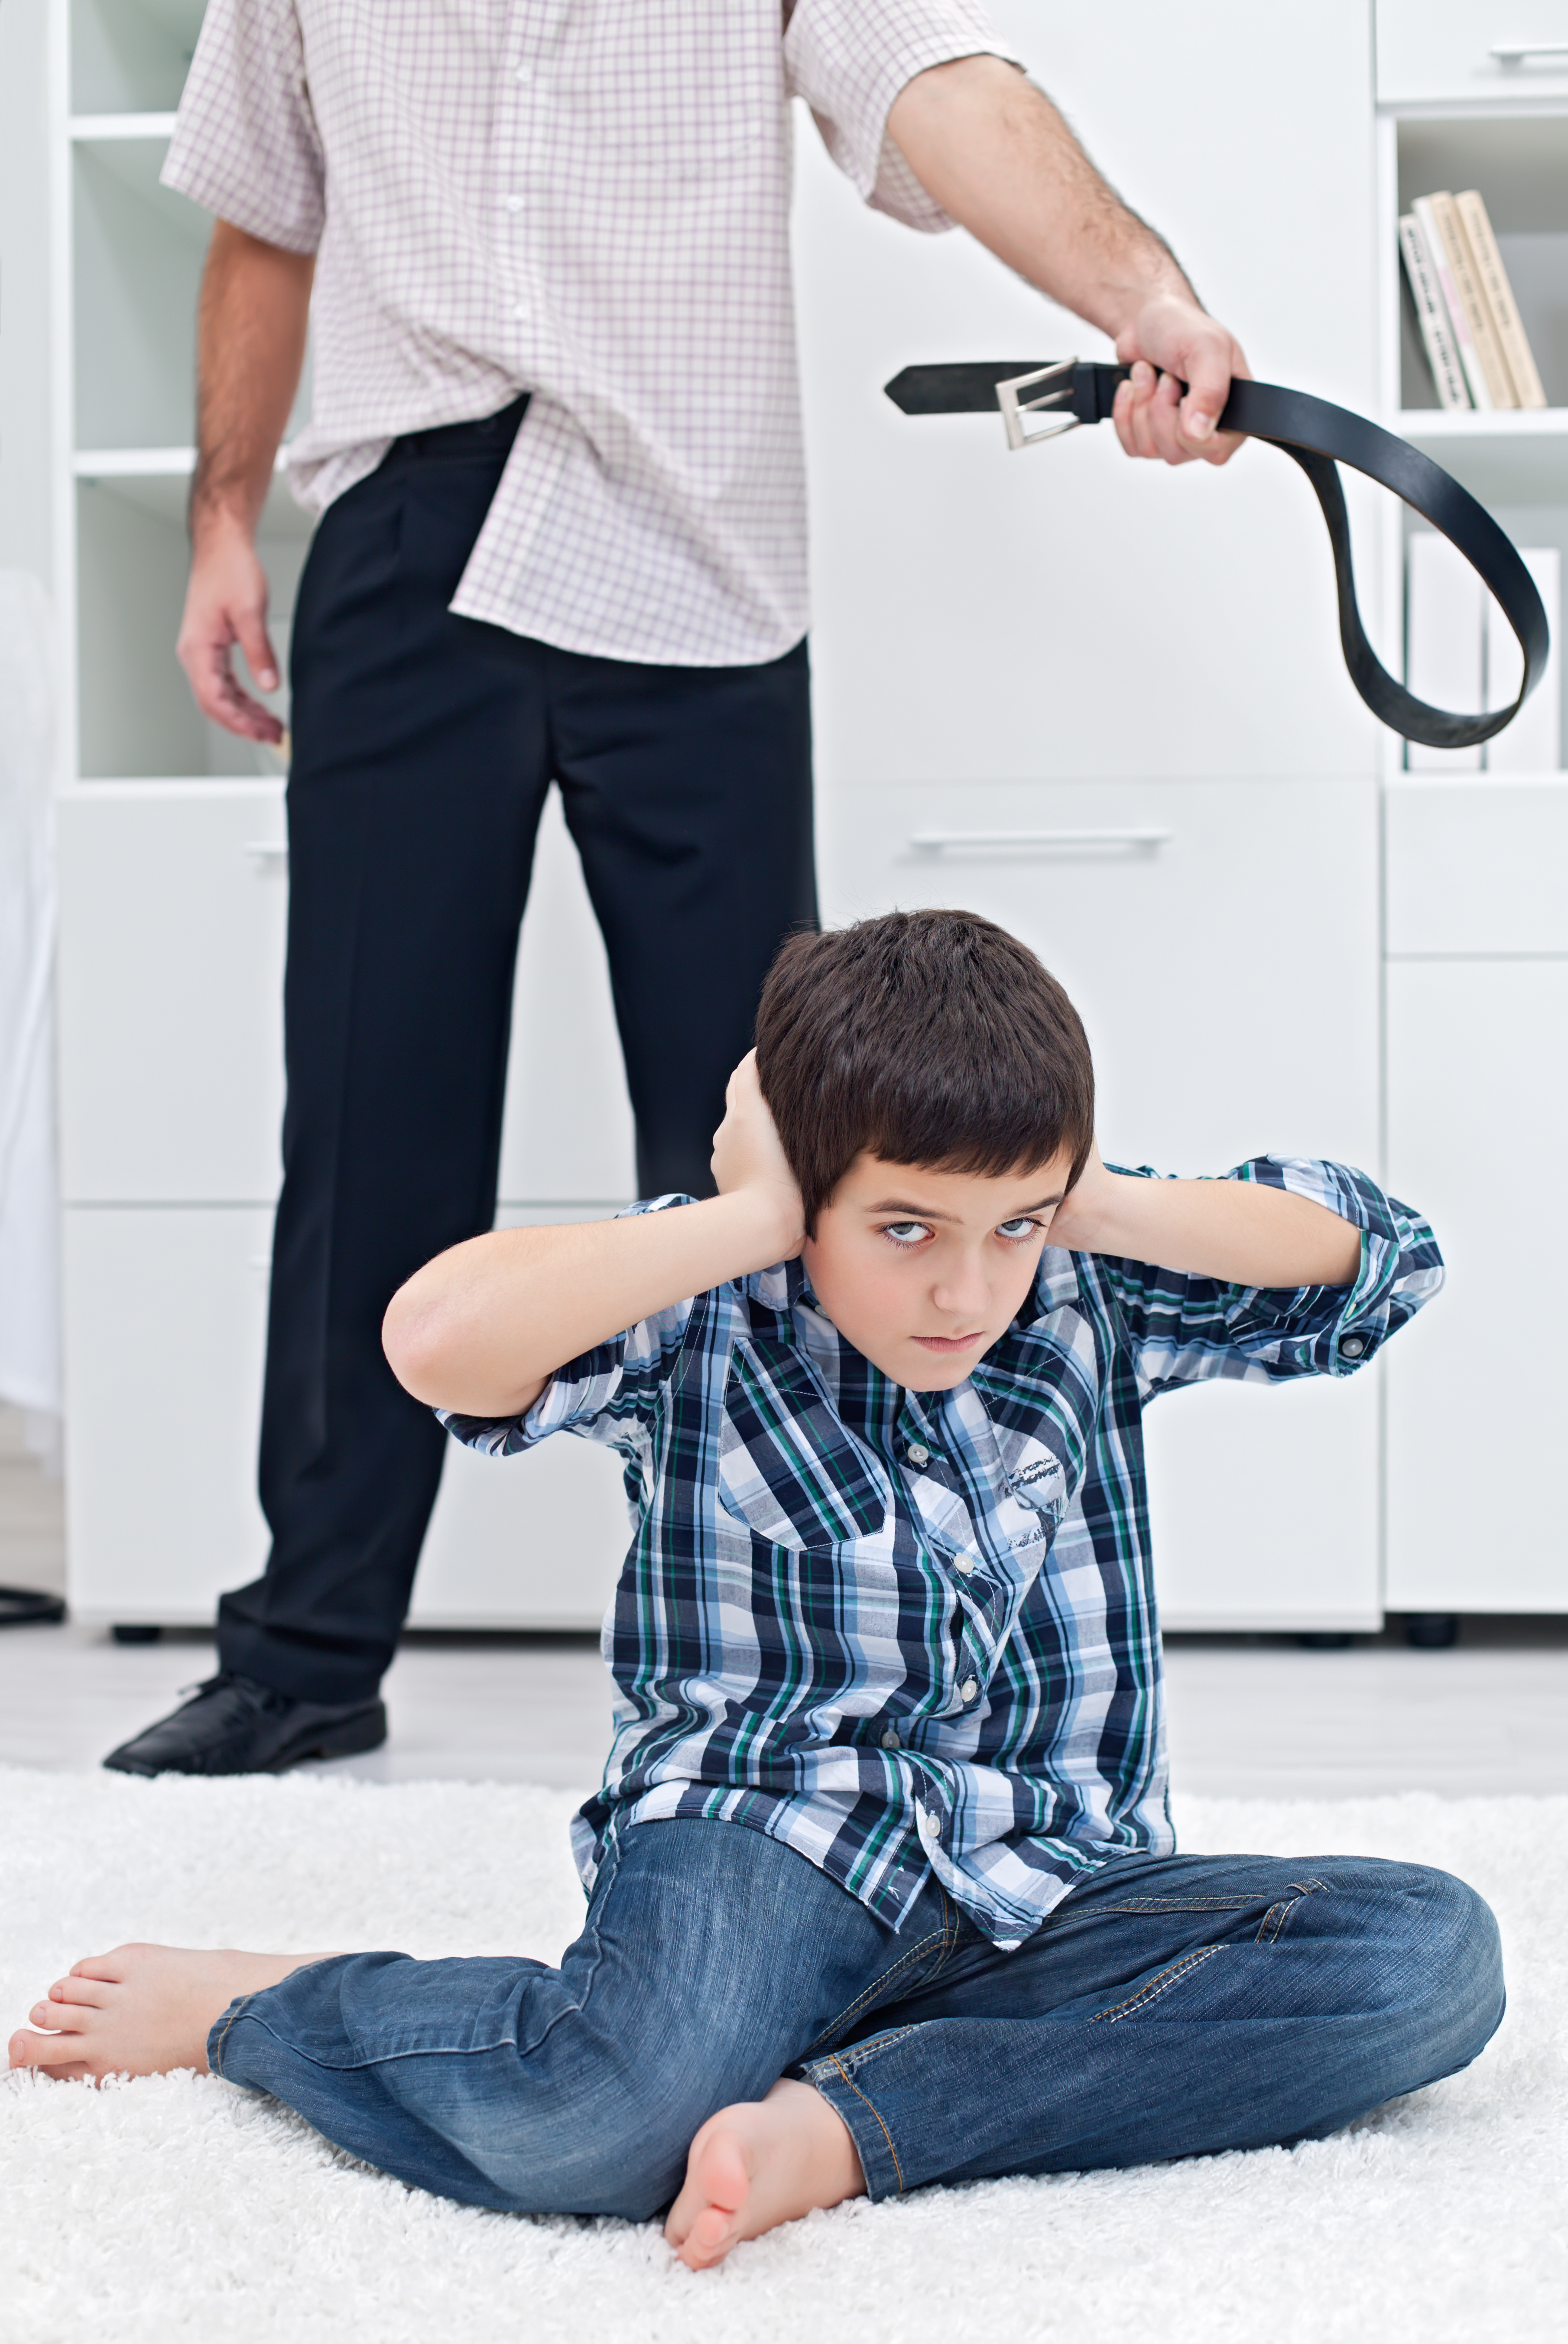 Ein Kind wird bestraft | Quelle: Shutterstock